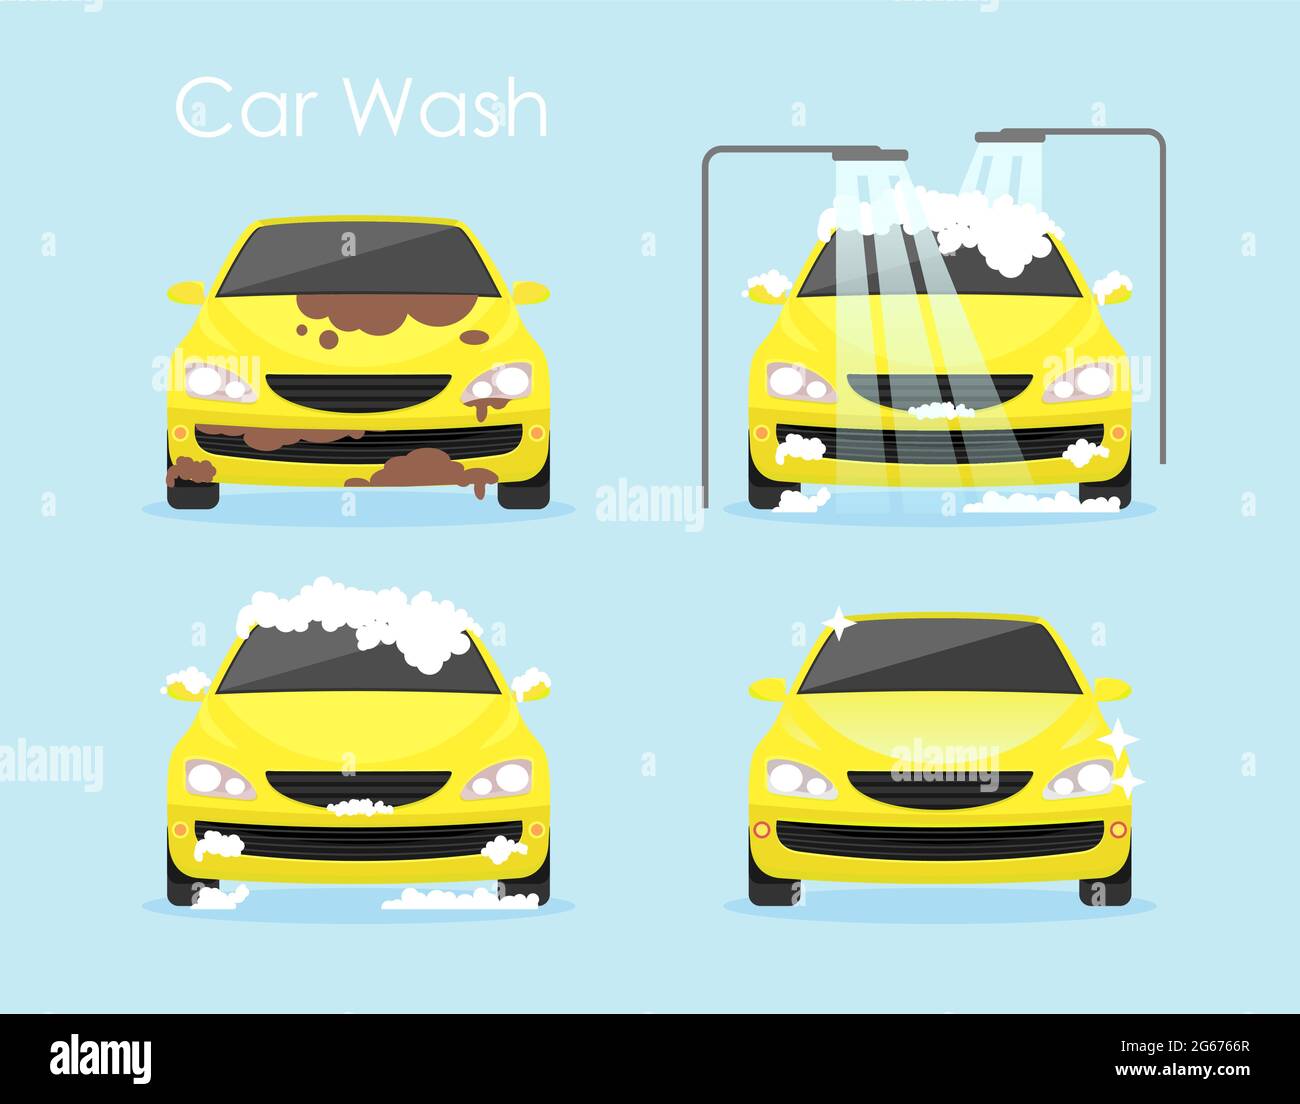 Illustration vectorielle du concept de lavage de voiture. Voiture jaune colorée est nettoyage étape par étape sur fond bleu dans le style de dessin animé plat. Illustration de Vecteur